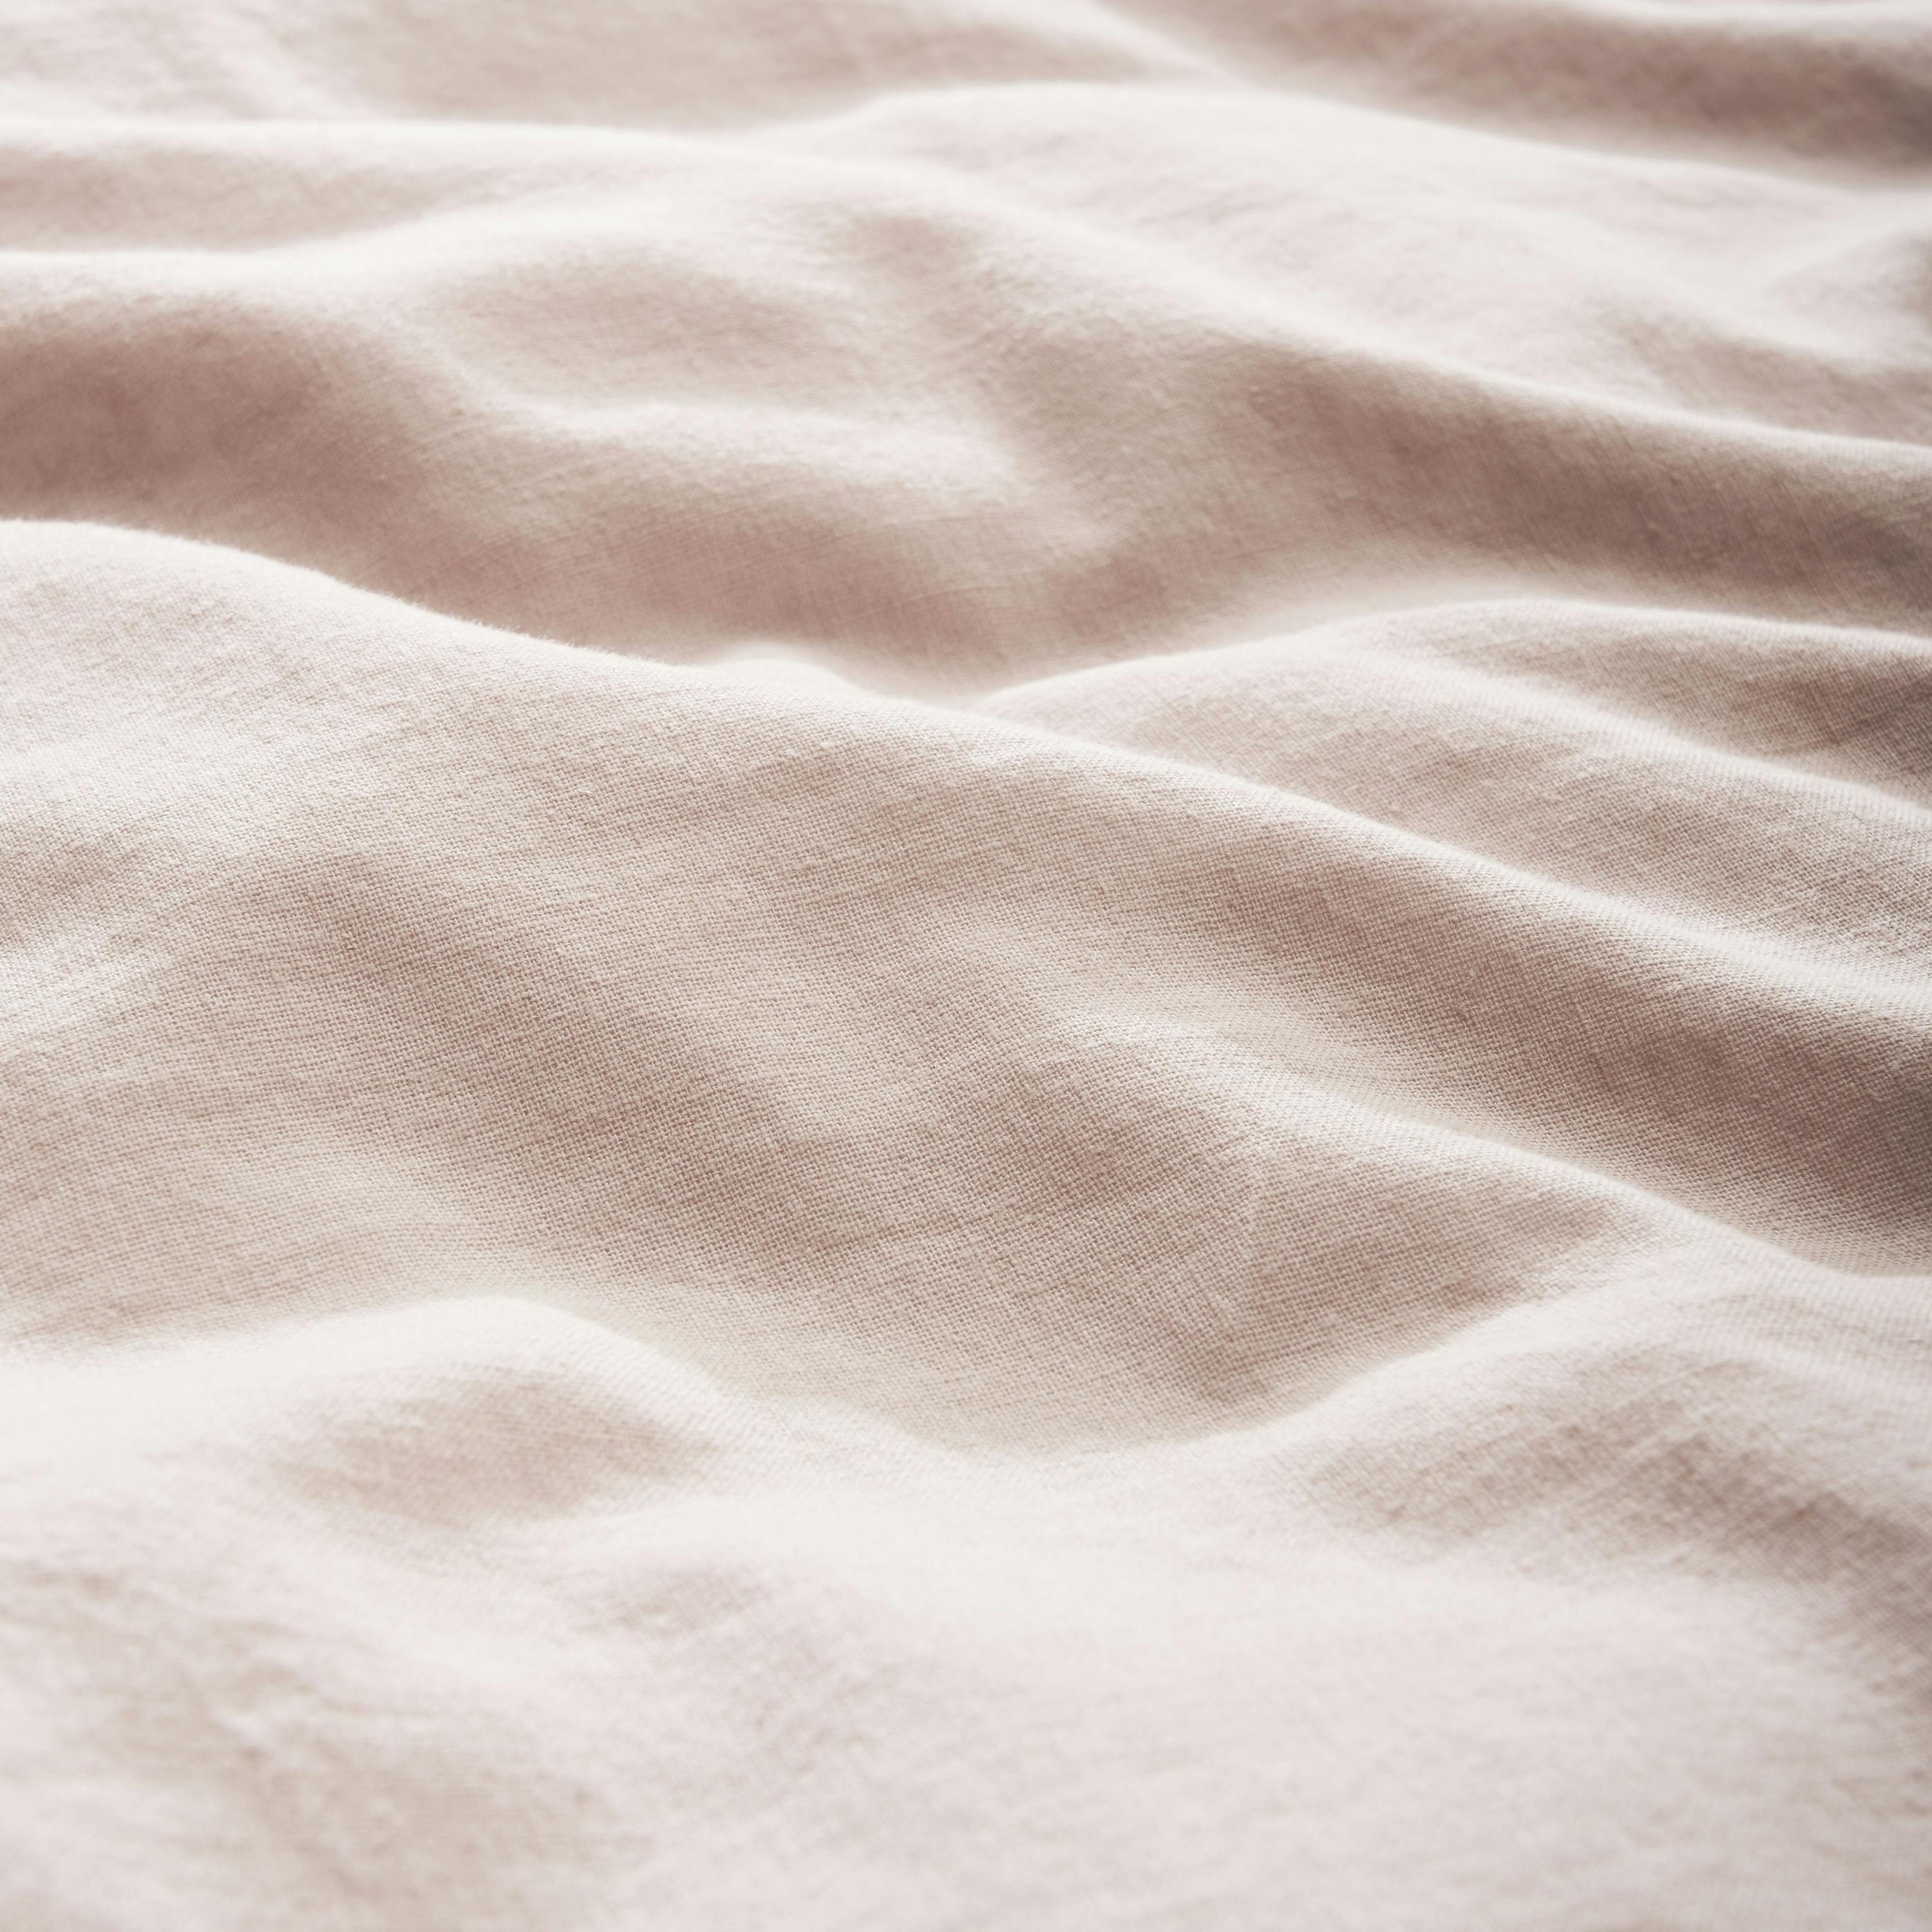 Cotton Linen Quilt Cover texture shot